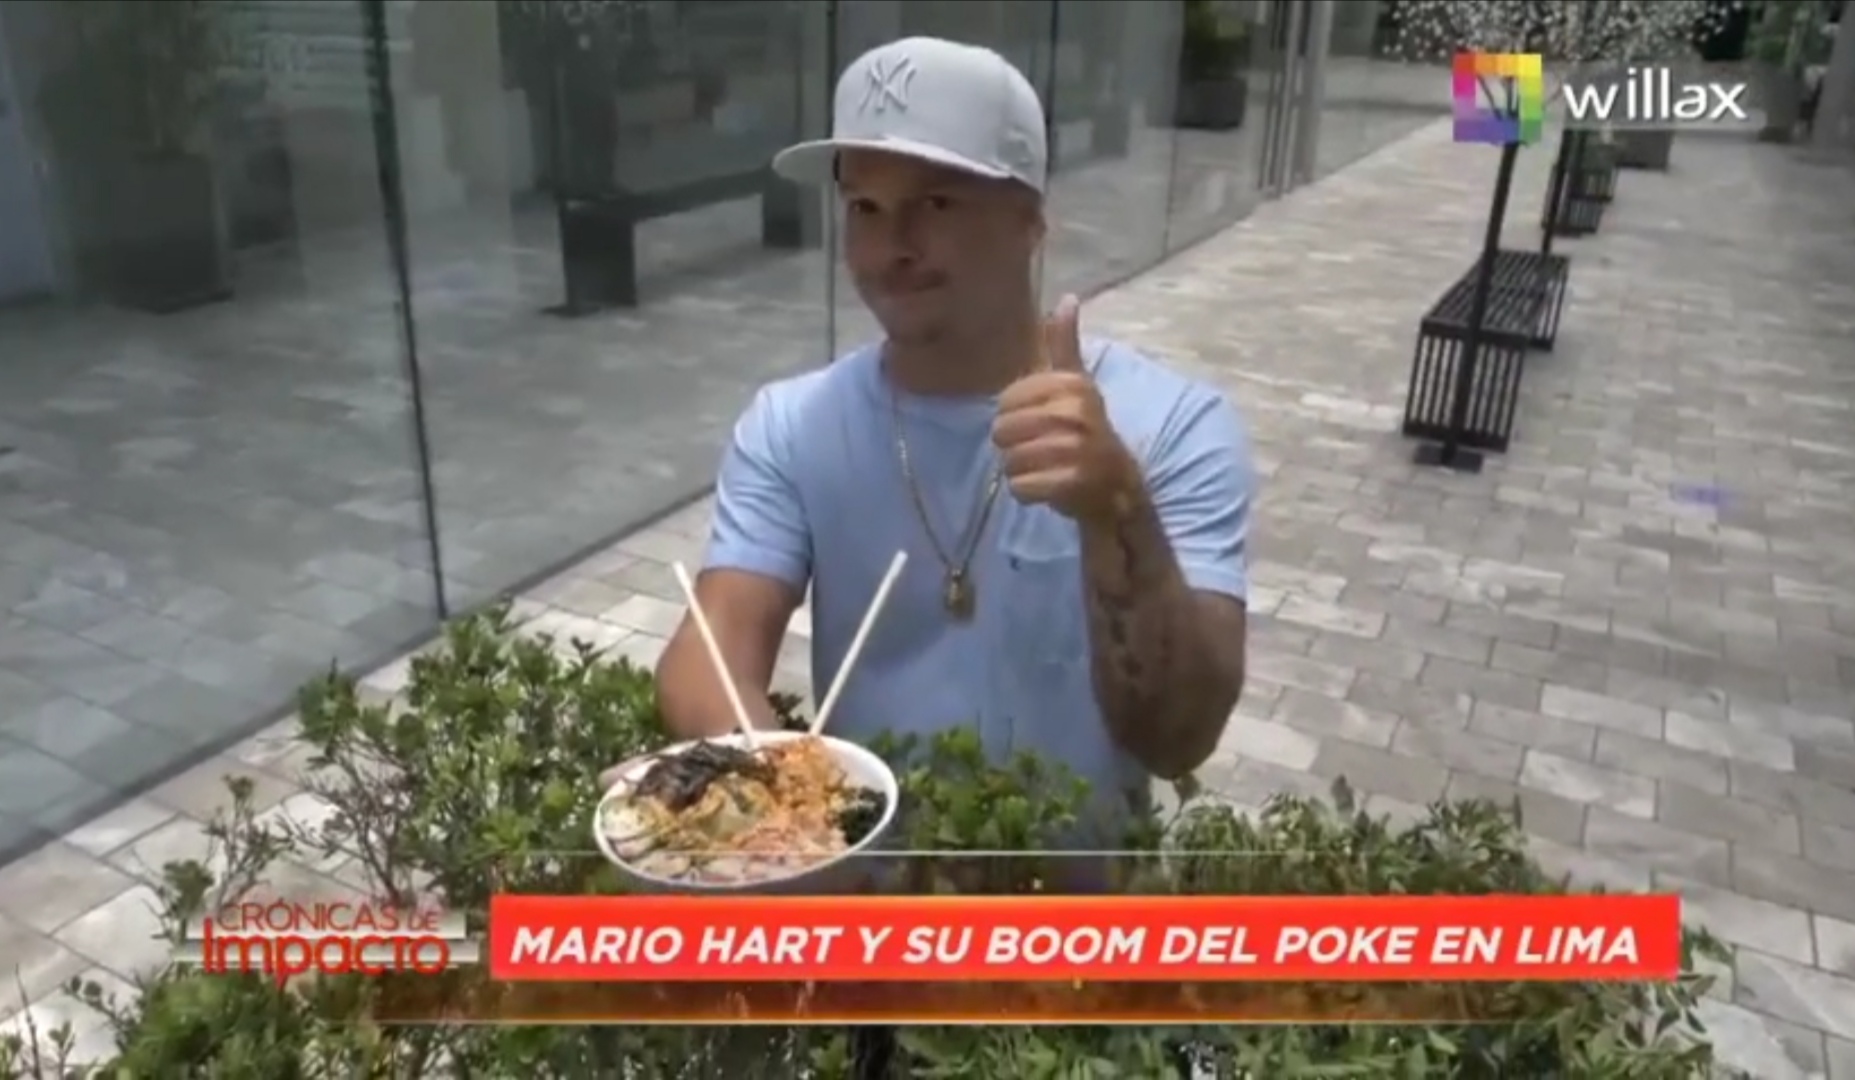 Crónicas de Impacto: Mario Hart y su boom del Poke en Lima